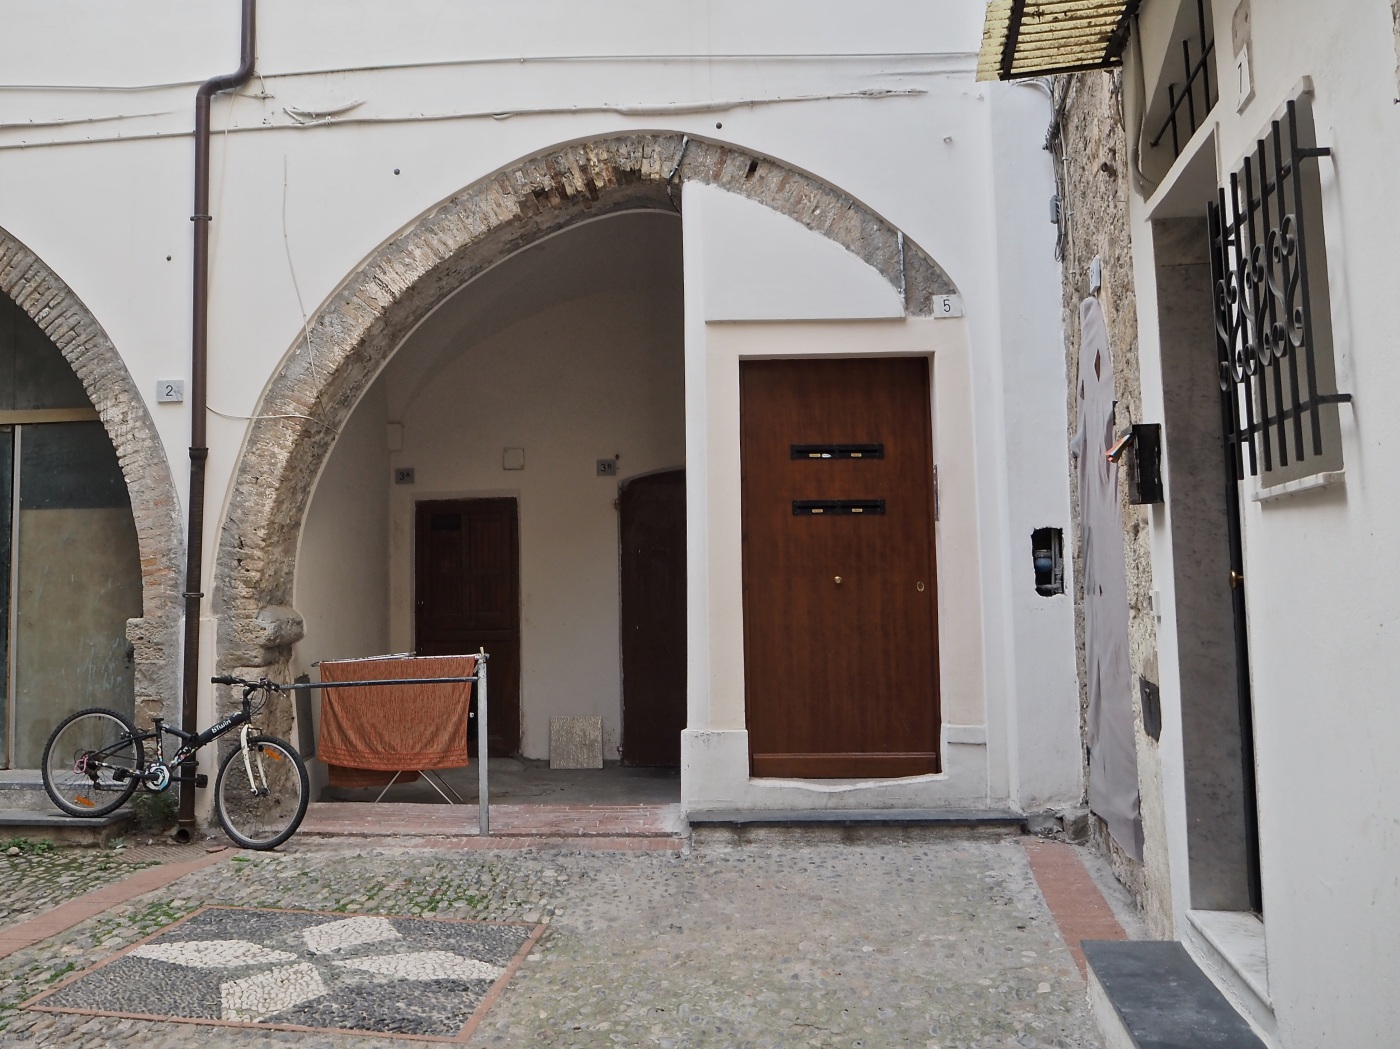 Ventimiglia Alta arch and doors